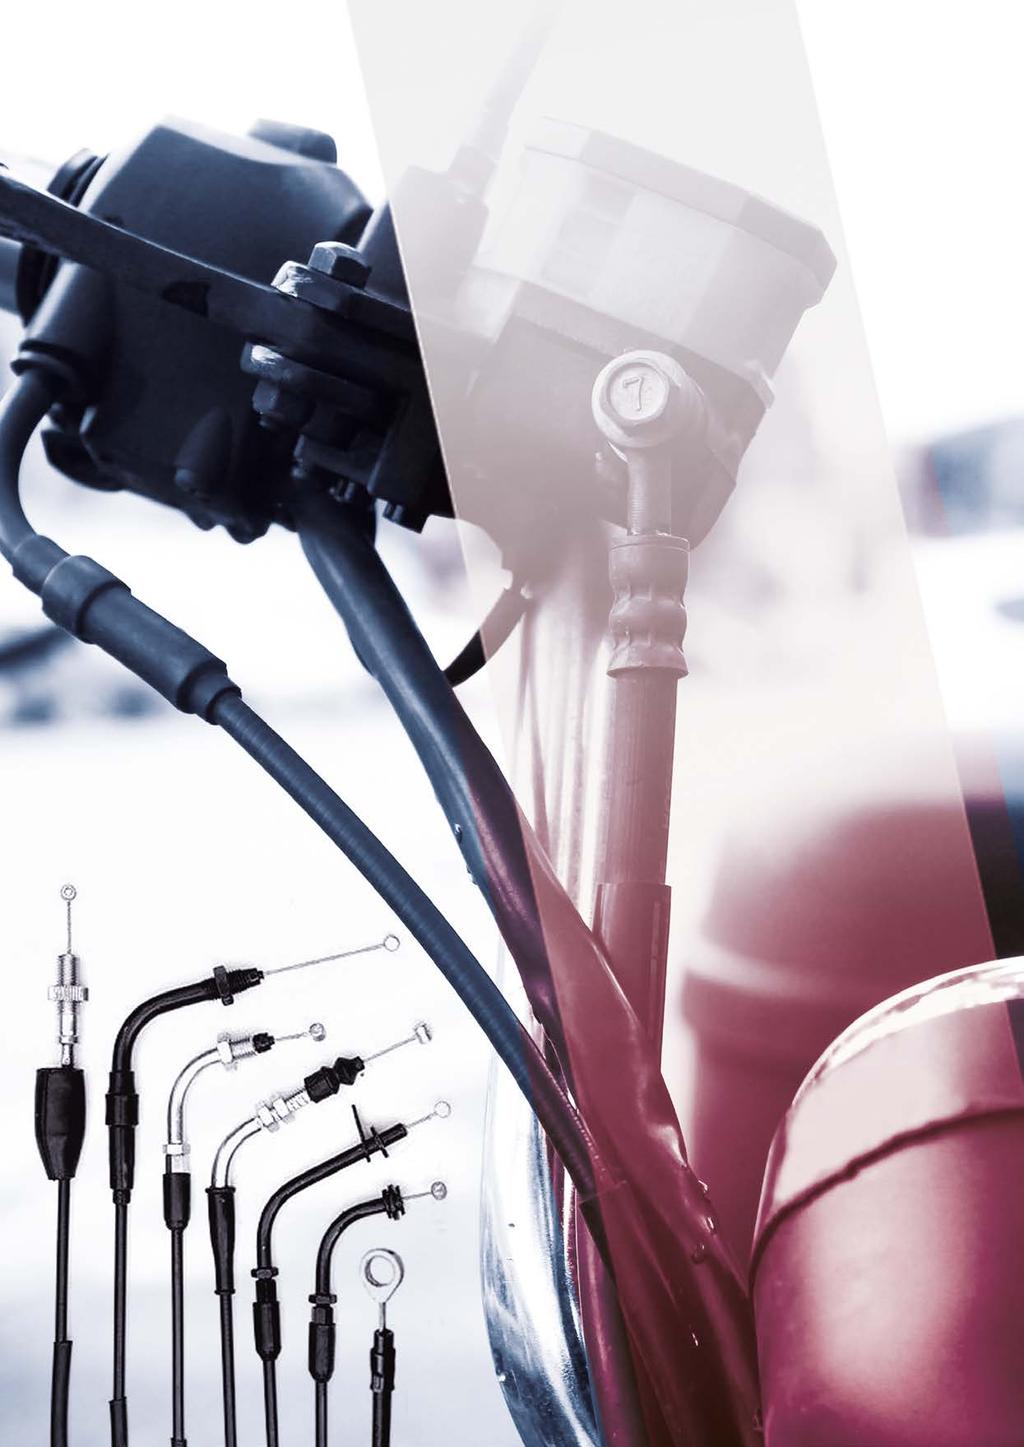 A Vulcan.Bor possui uma linha completa de cabos de comando de motocicletas para acelerador, embreagem, freio, tacômetro, assento e velocímetro.